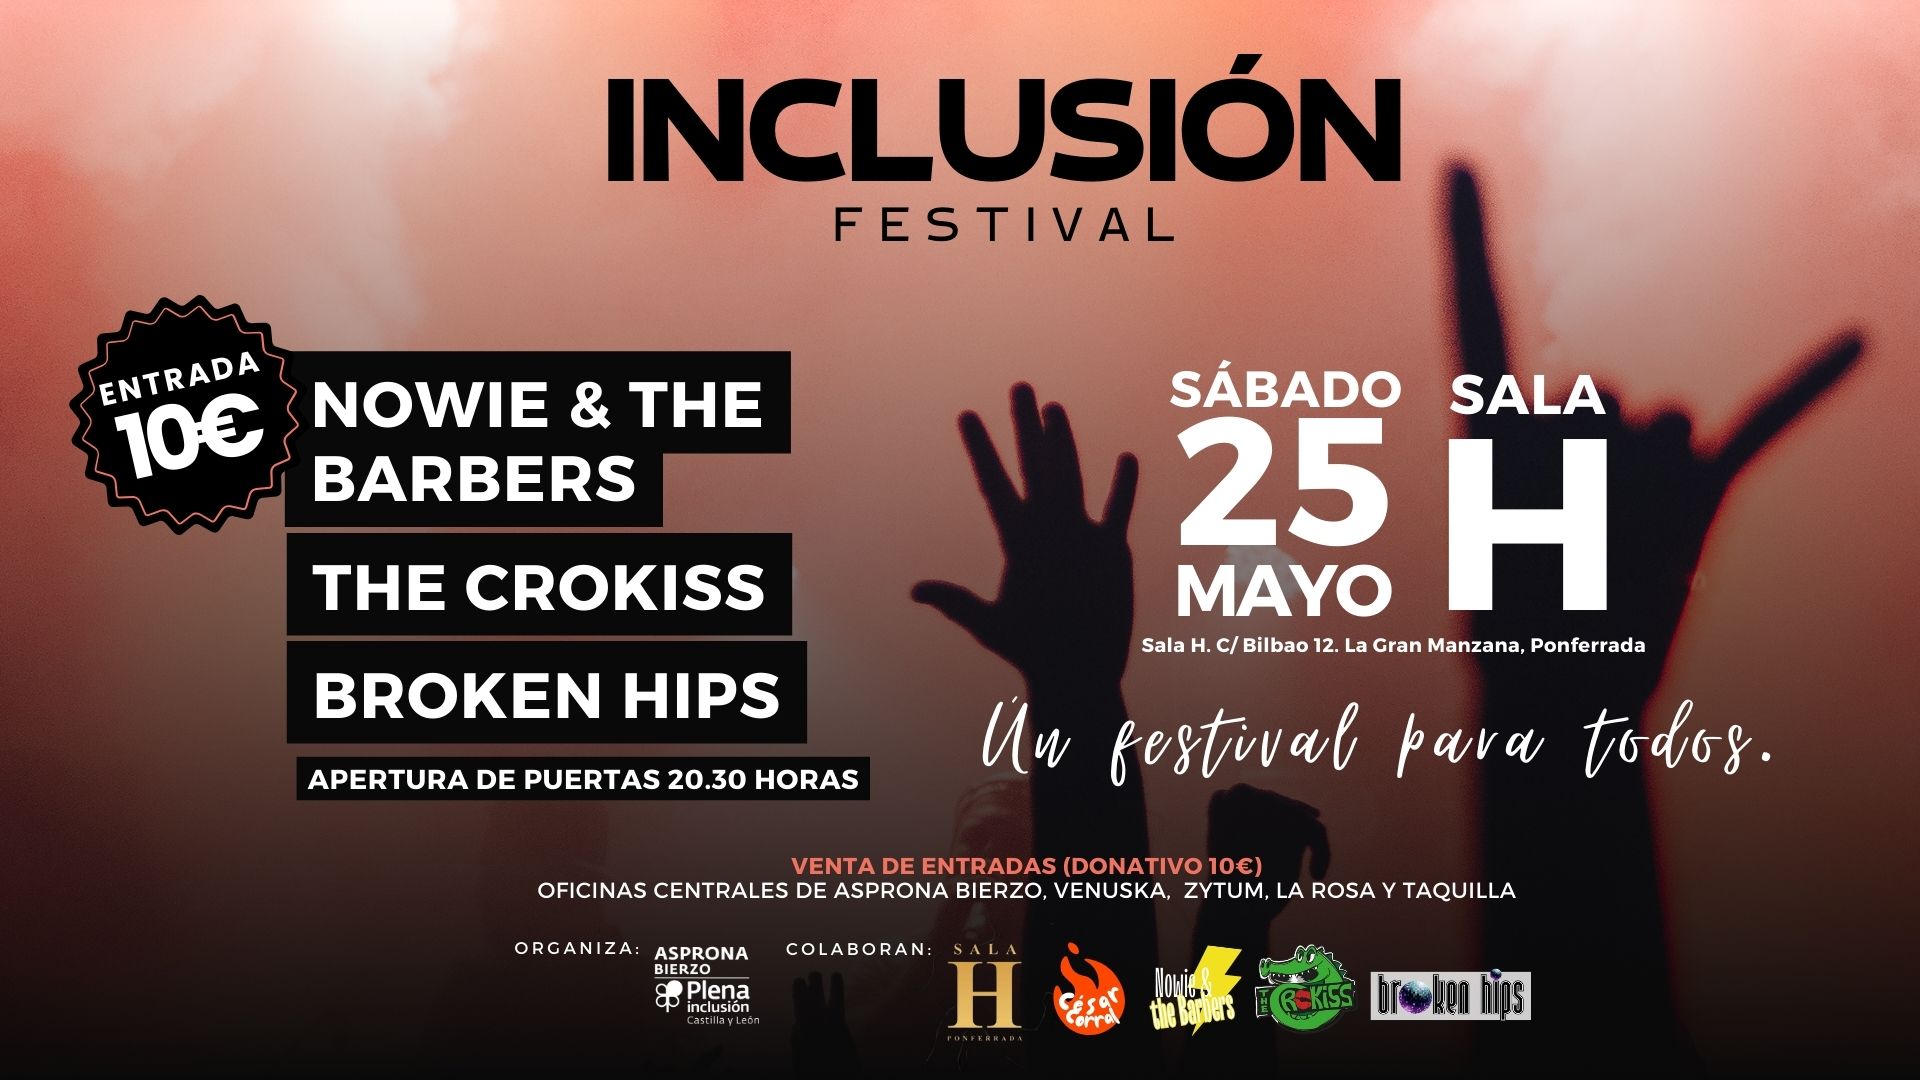 Vuelve el Inclusión Festival, el “festival para todos” de Asprona Bierzo el 25 de mayo 1